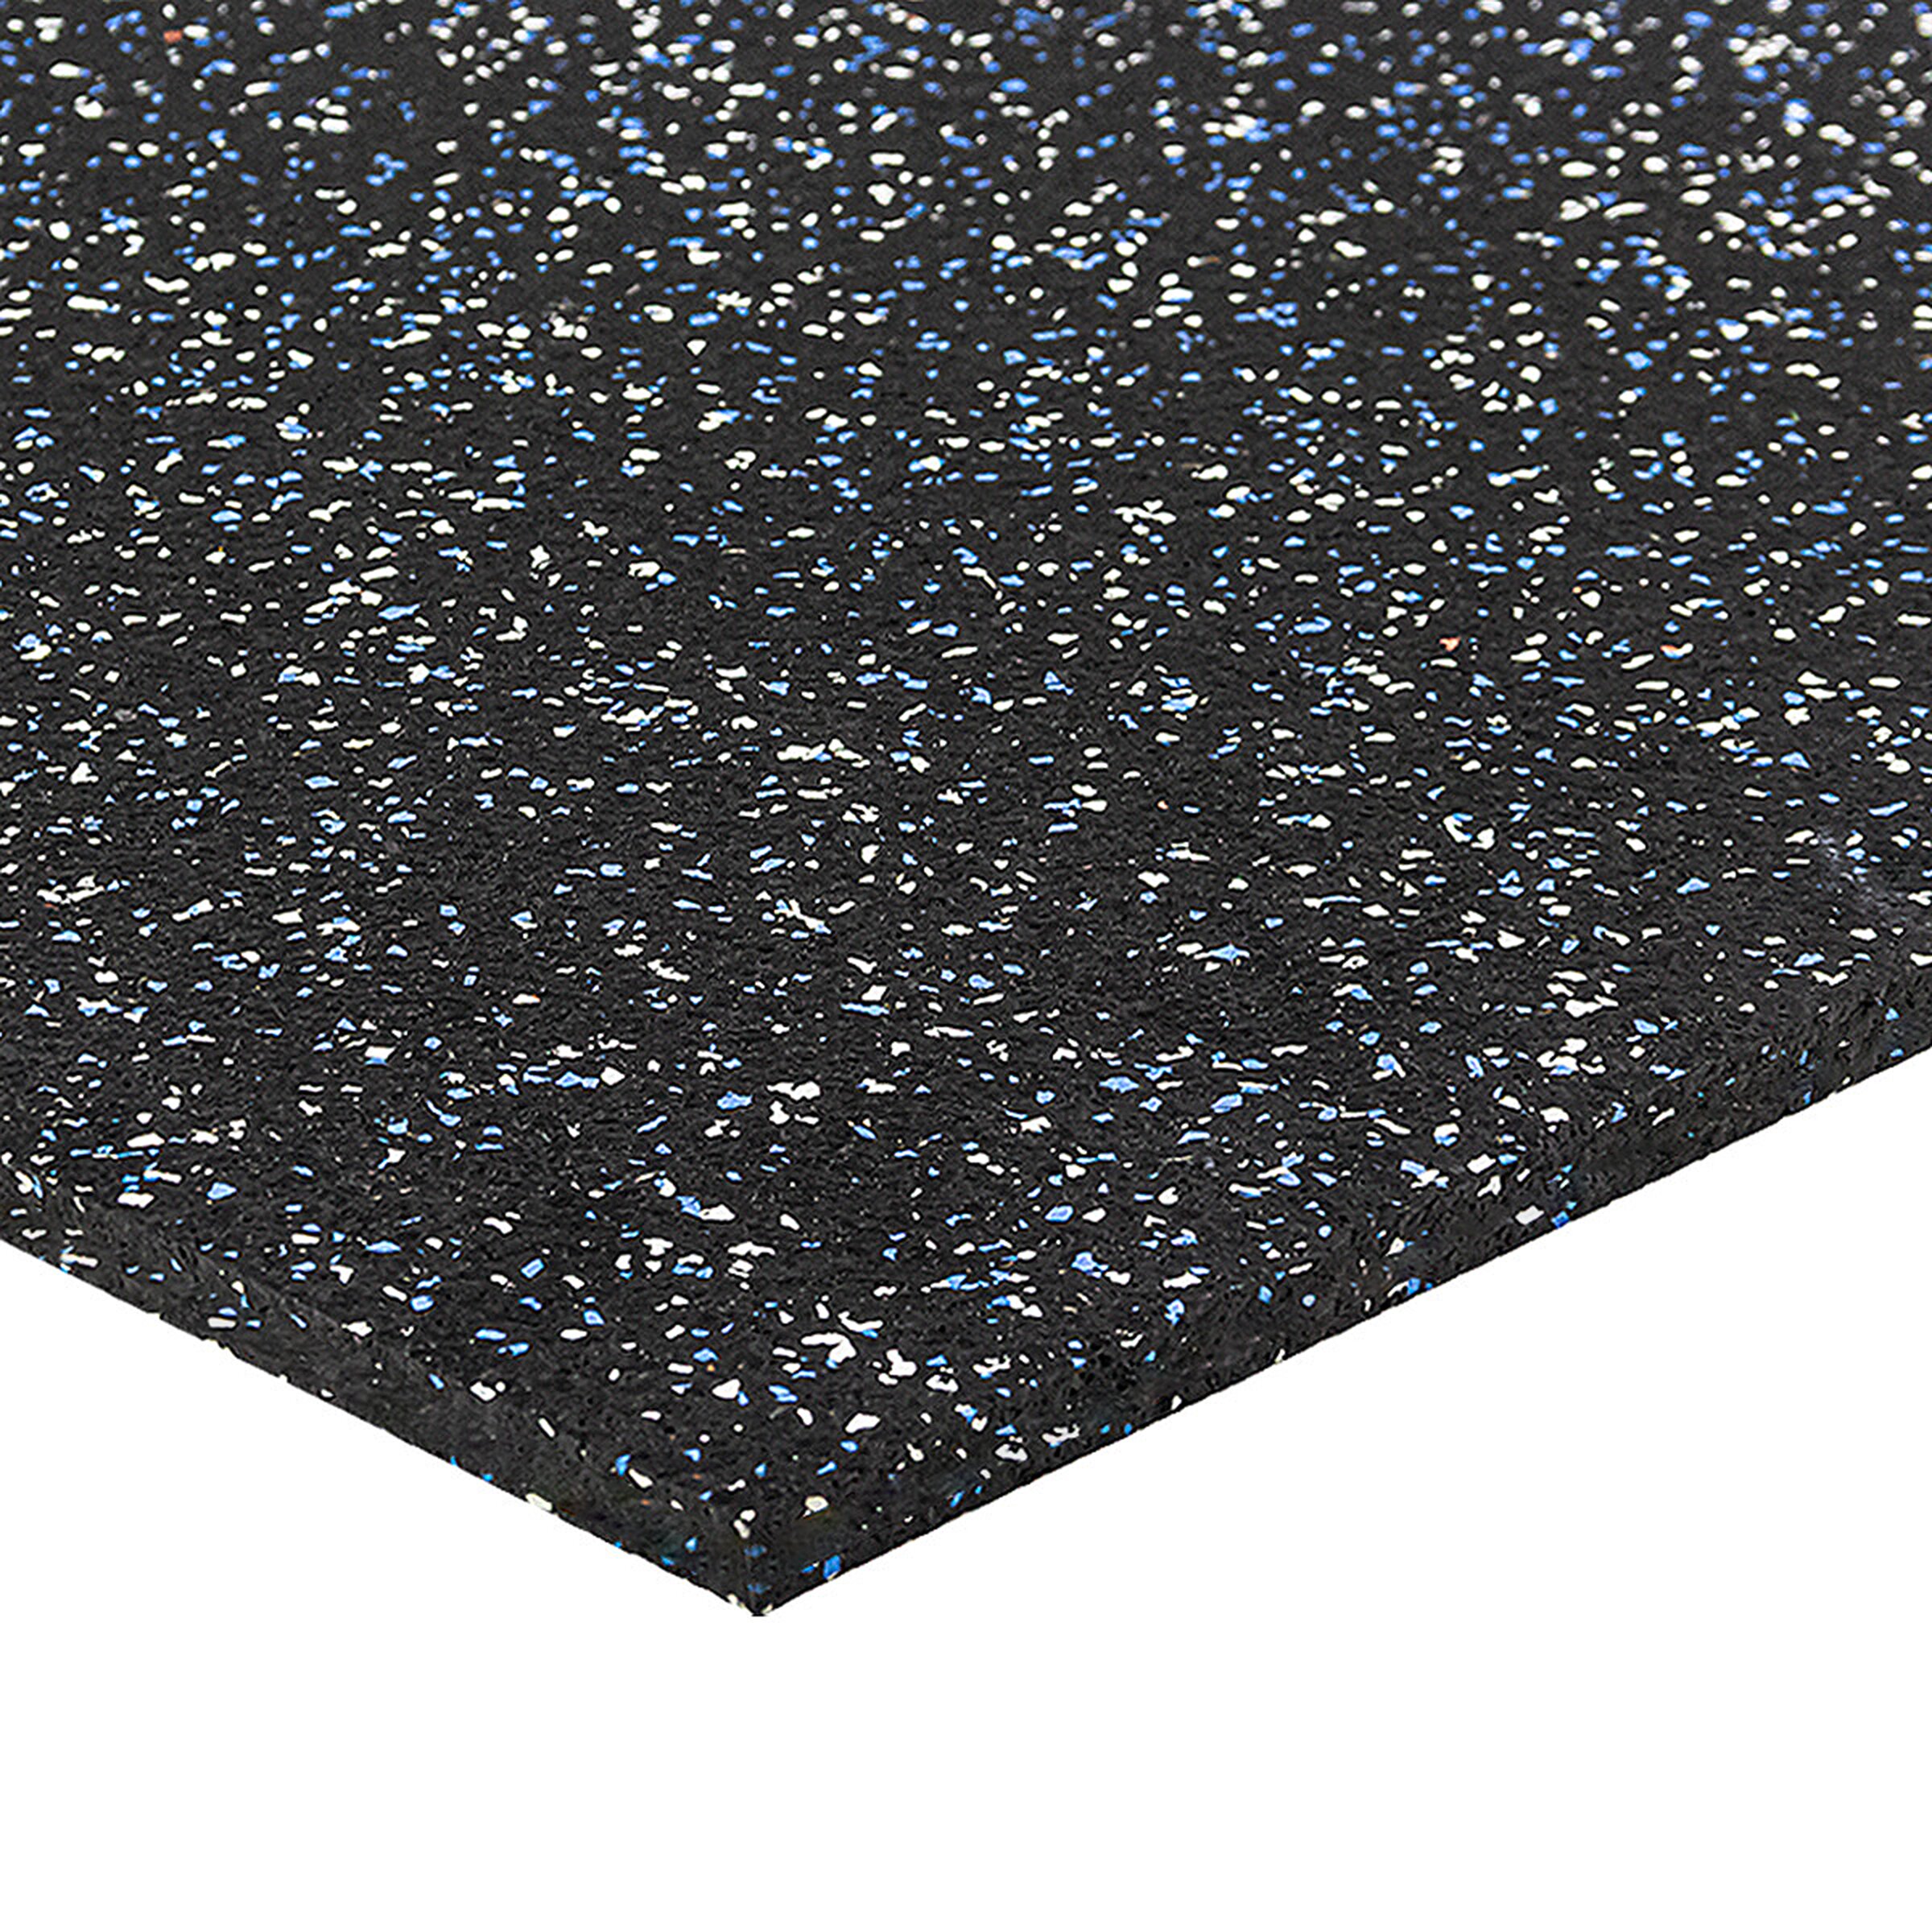 Černo-bílo-modrá gumová puzzle modulová dlažba FLOMA SF1050 FitFlo - délka 100 cm, šířka 100 cm, výška 1 cm